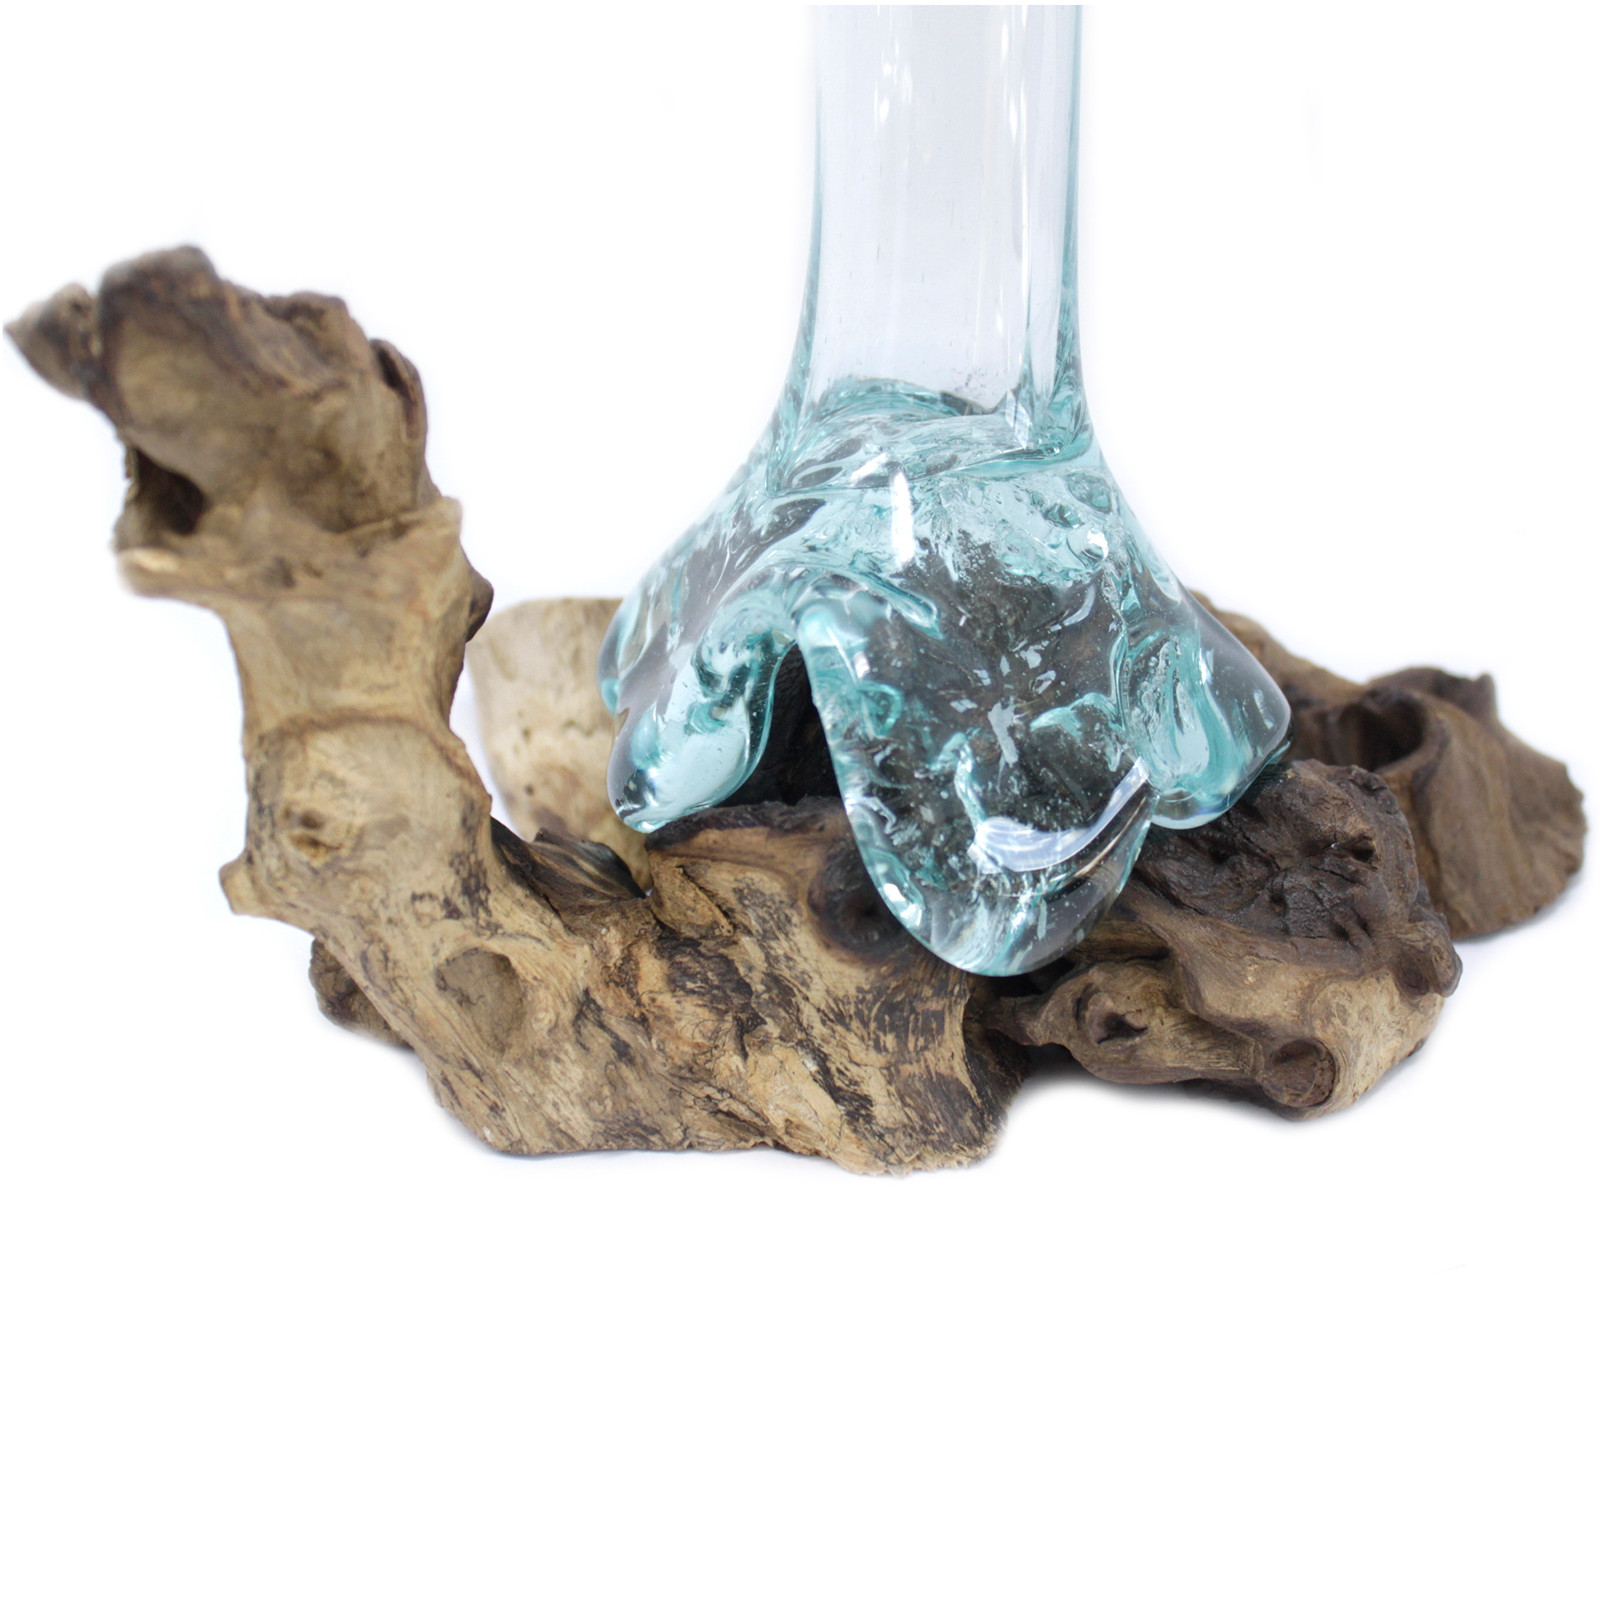 Molten Glass on Wood - Vase